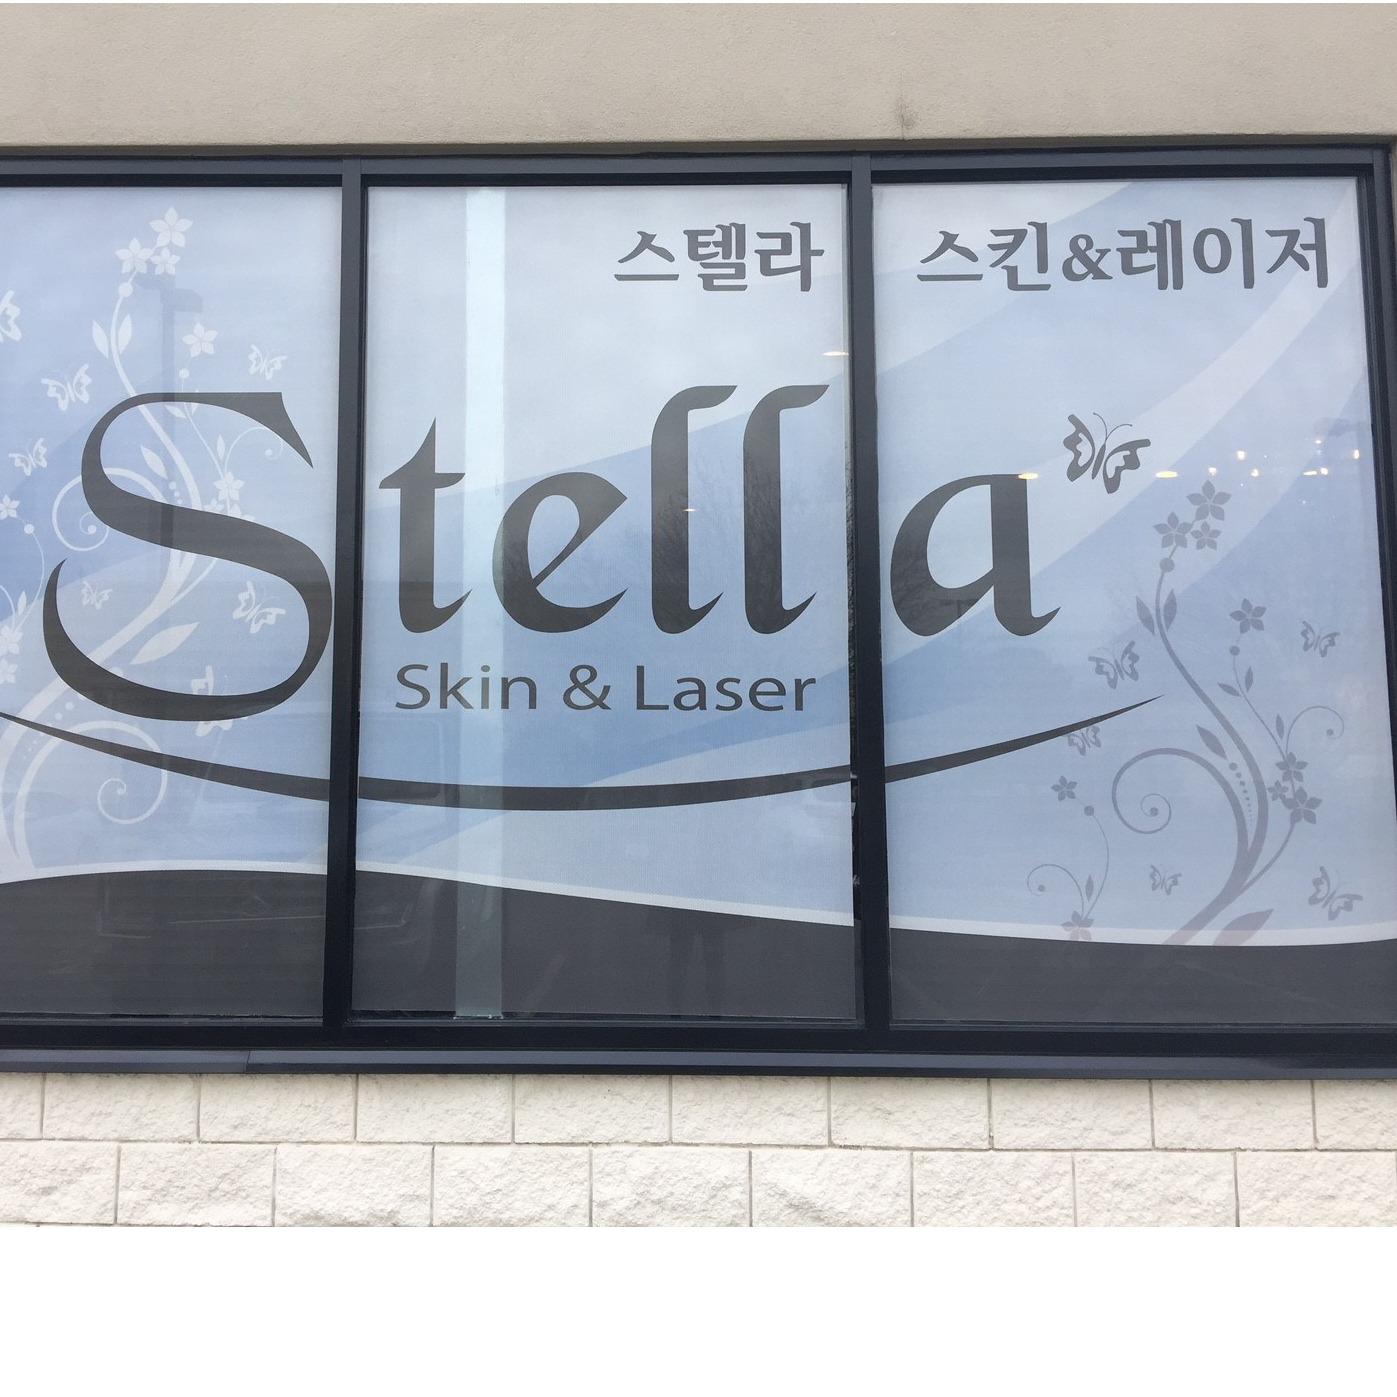 Stella Skin & Laser Photo